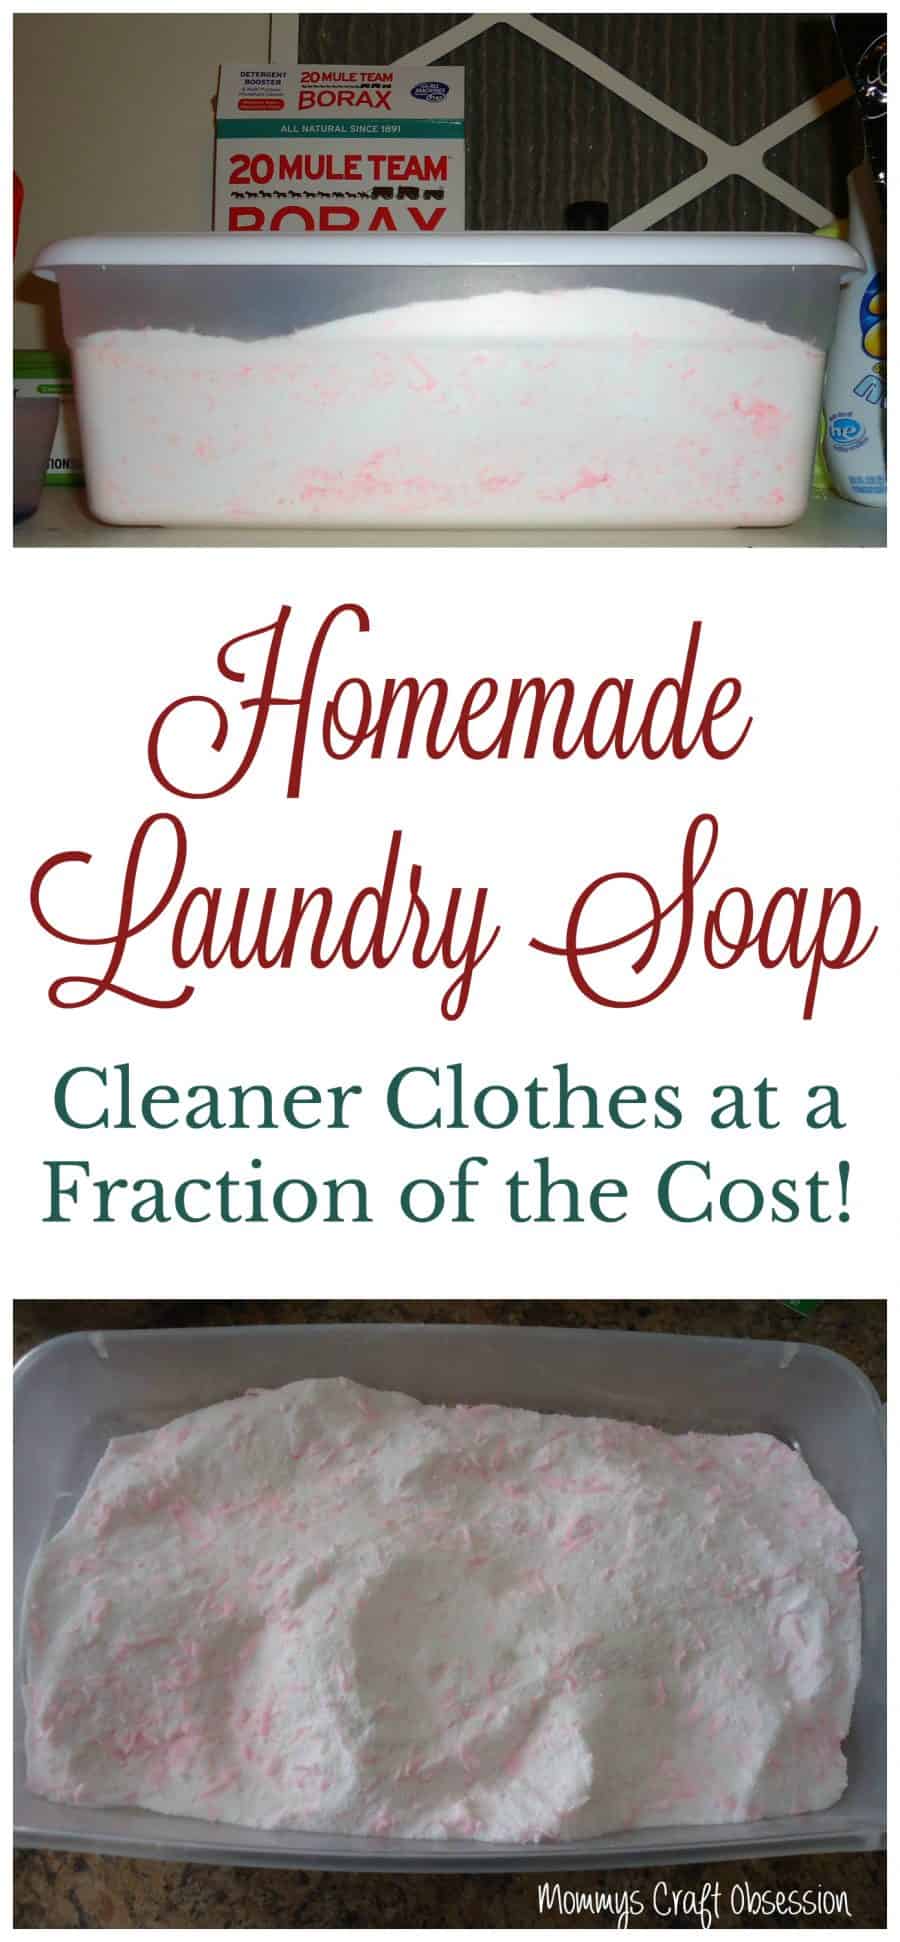 Homemade Laundry Soap Recipe